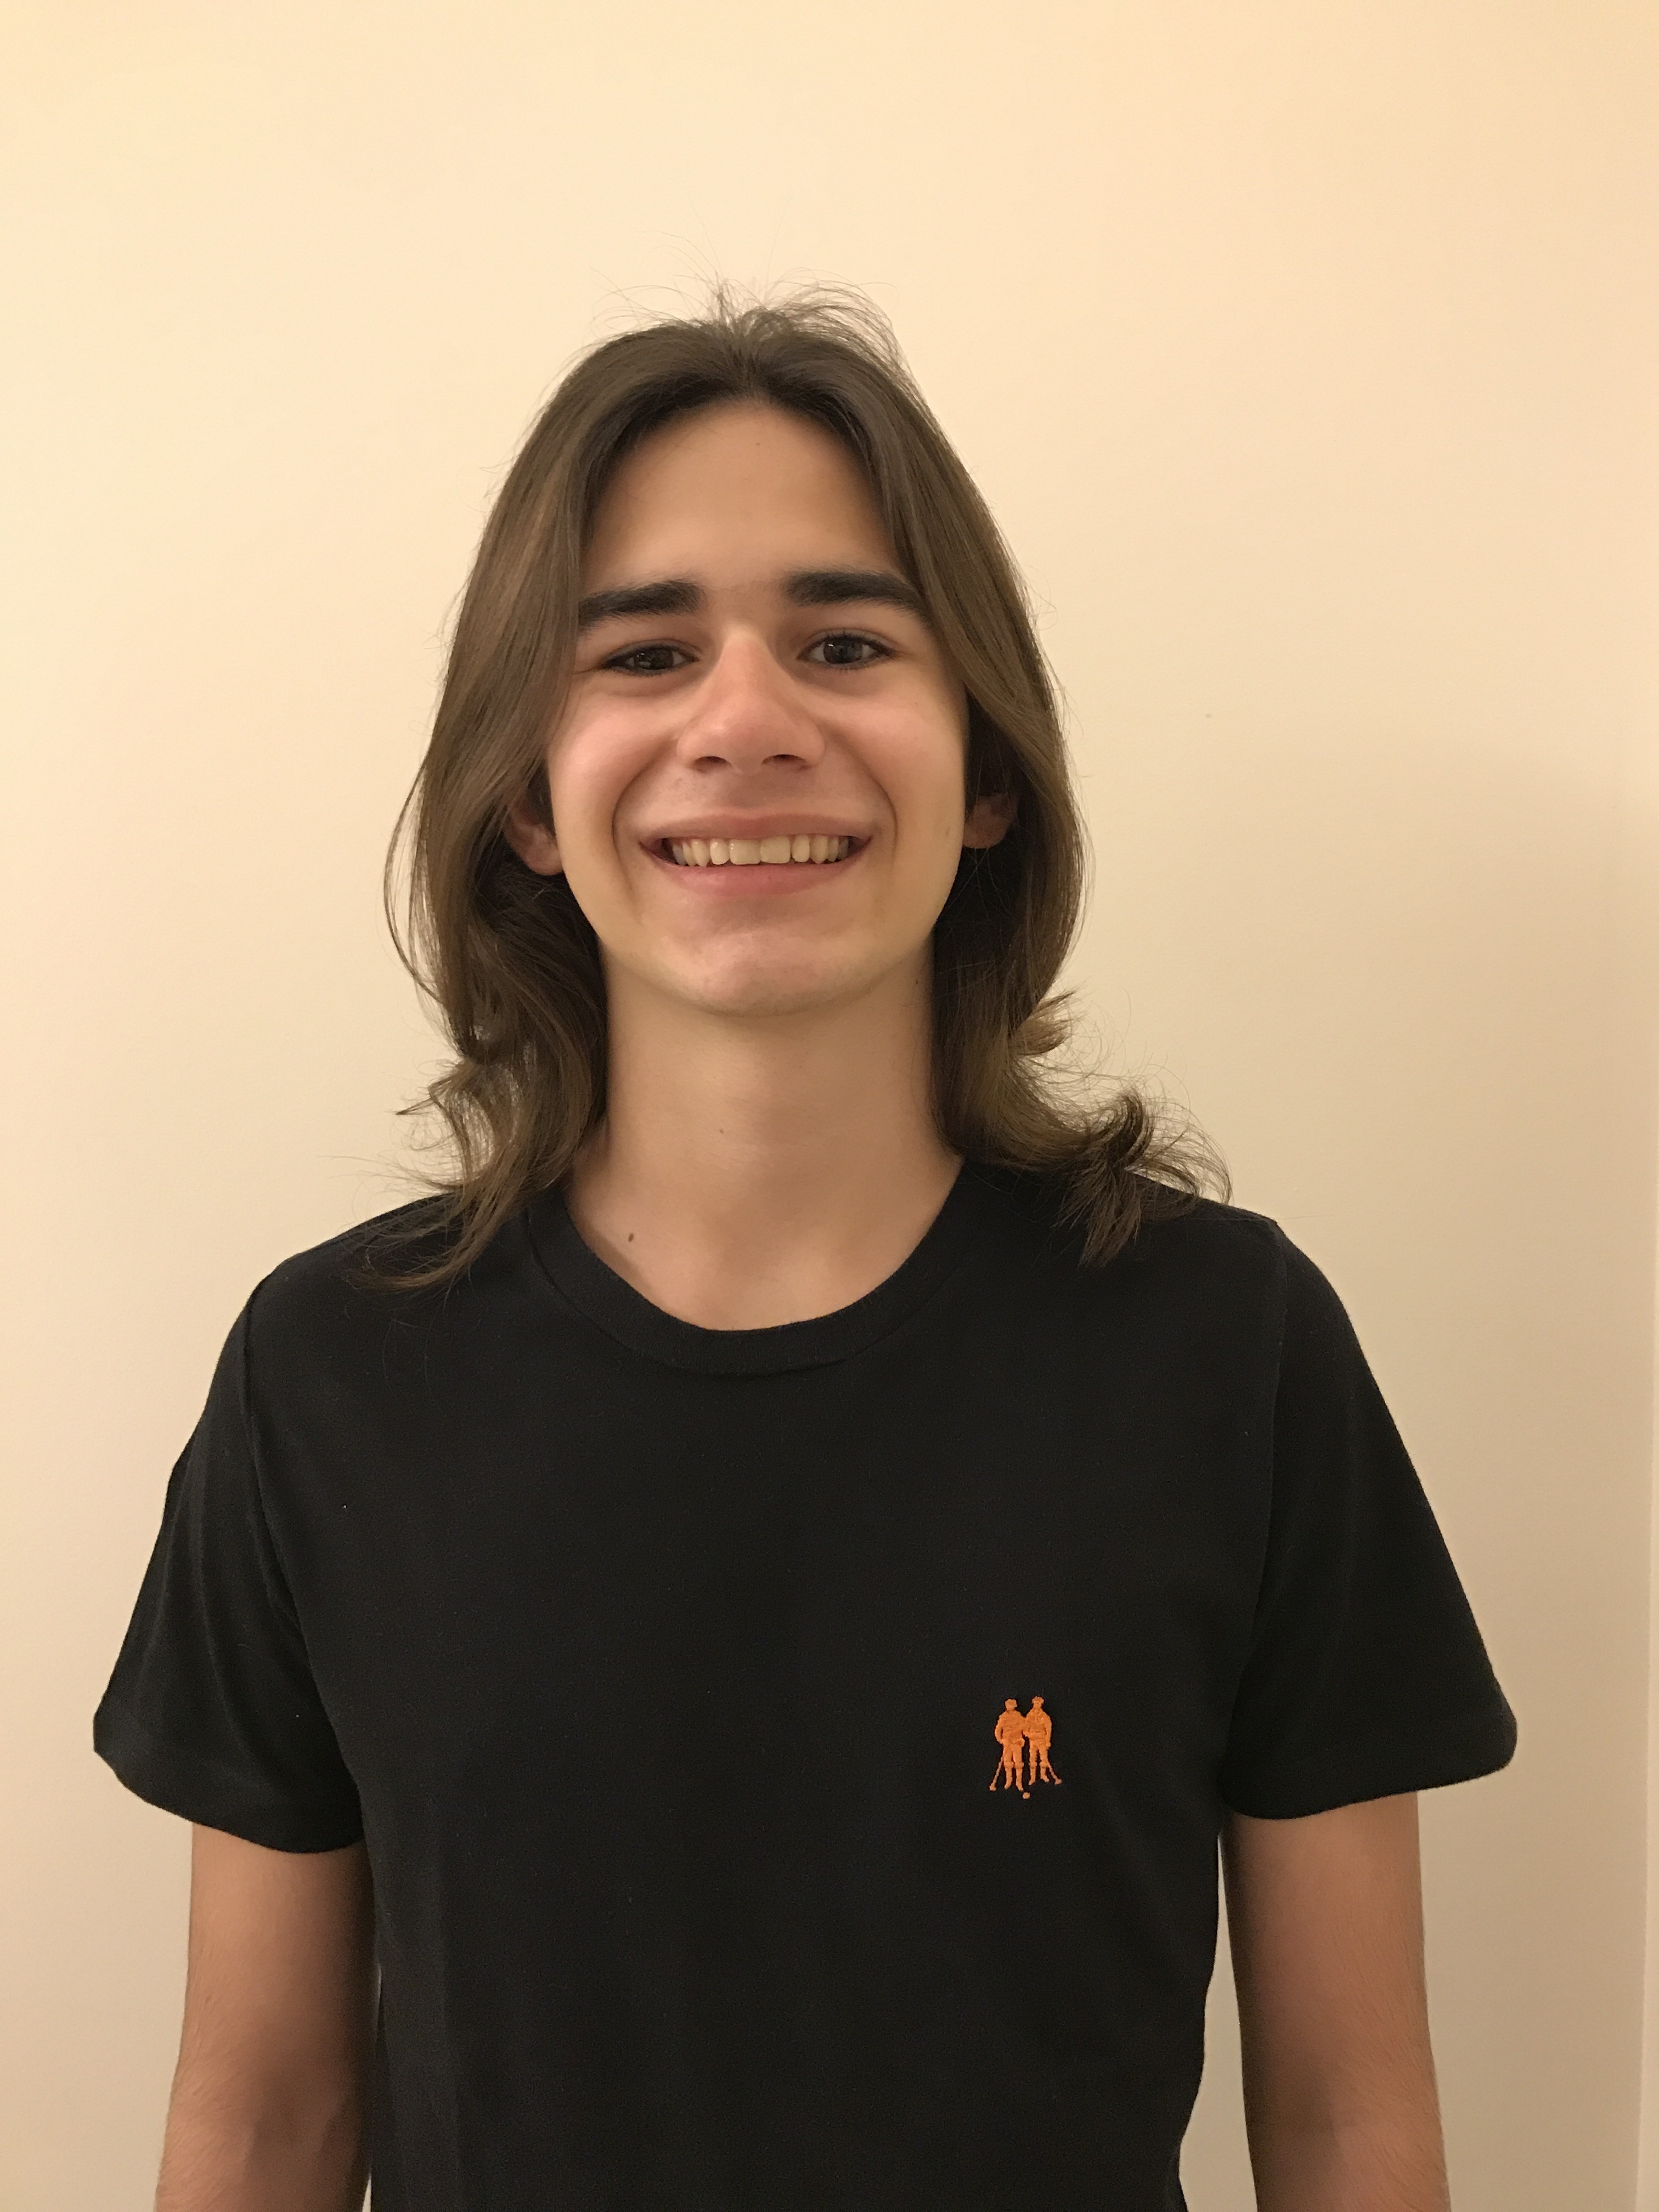 Fernando Ribeiro de Senna - tem 17 anos, é de Jundiaí (SP) e cursa o 3º ano do ensino médio no colégio Leonardo Da Vinci (Foto: divulgação)